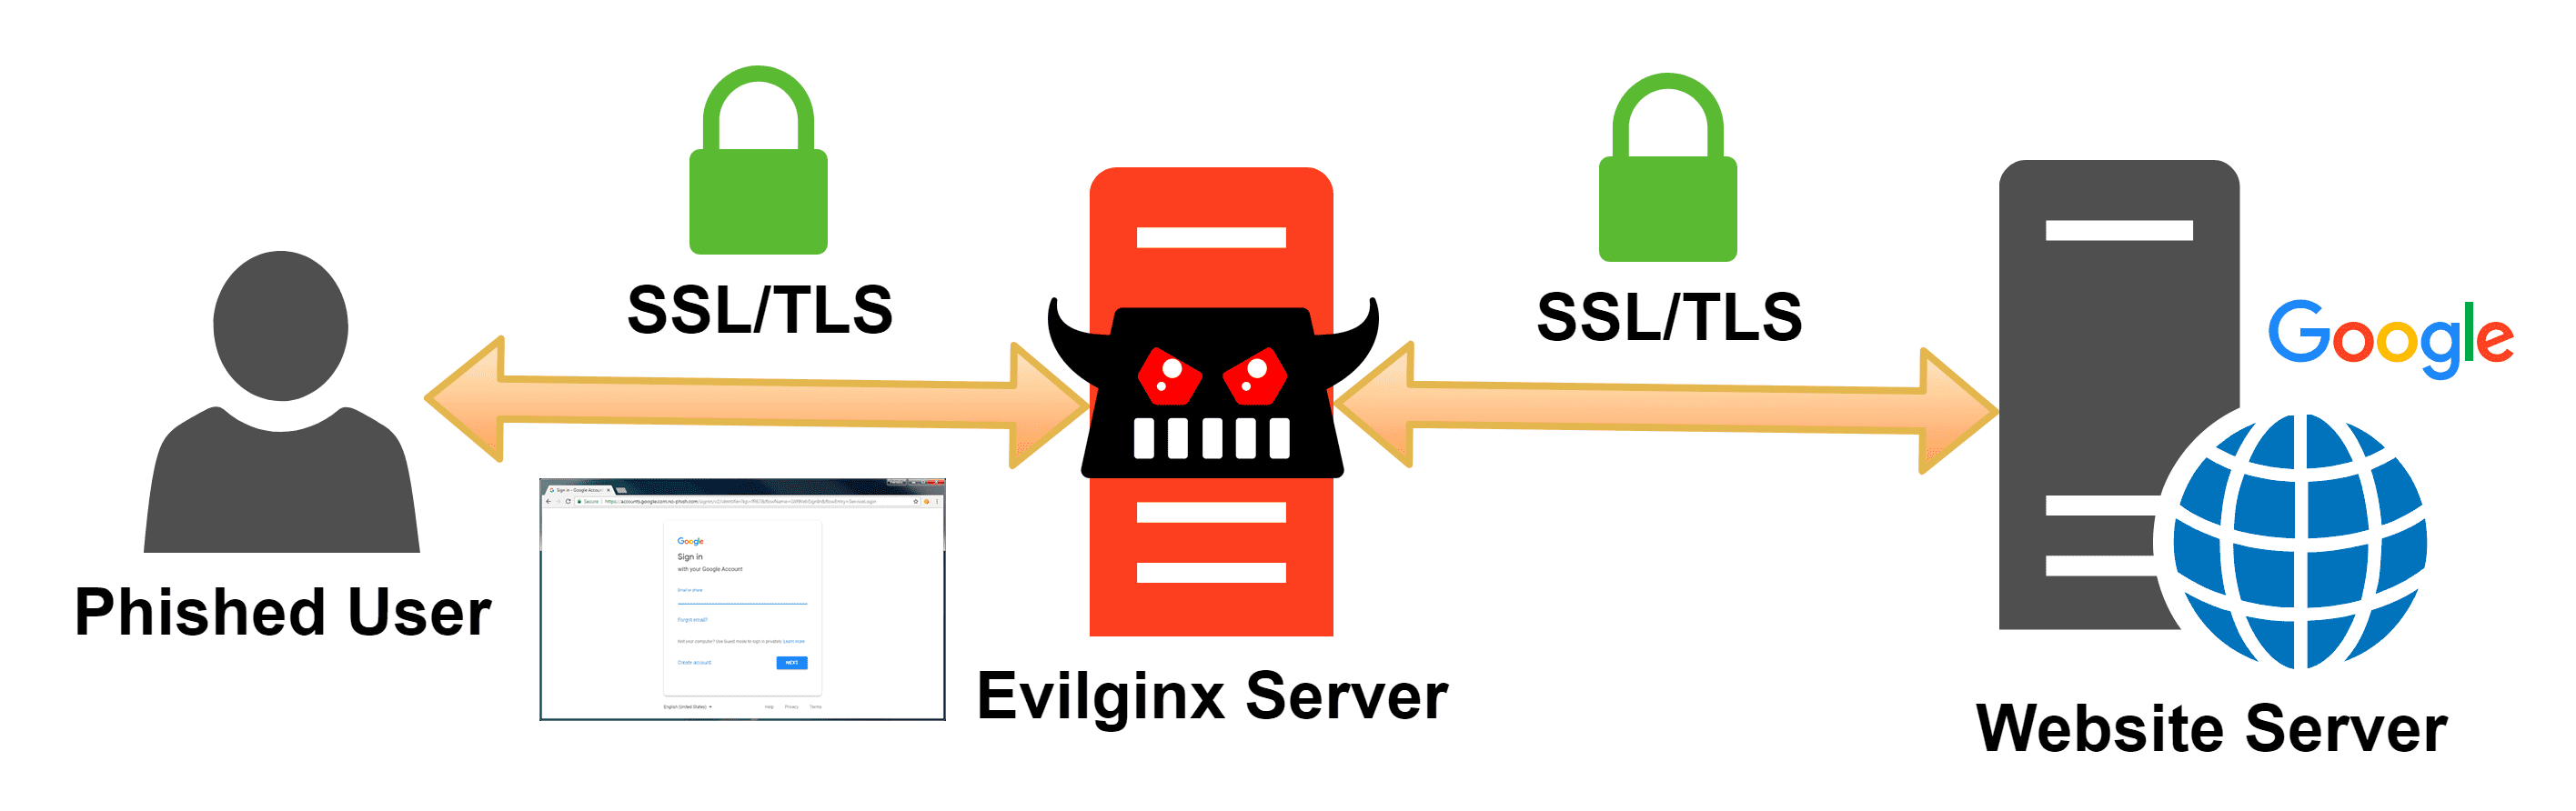 Demo tấn công Phishing với Evilginx2 và cách phòng tránh 13